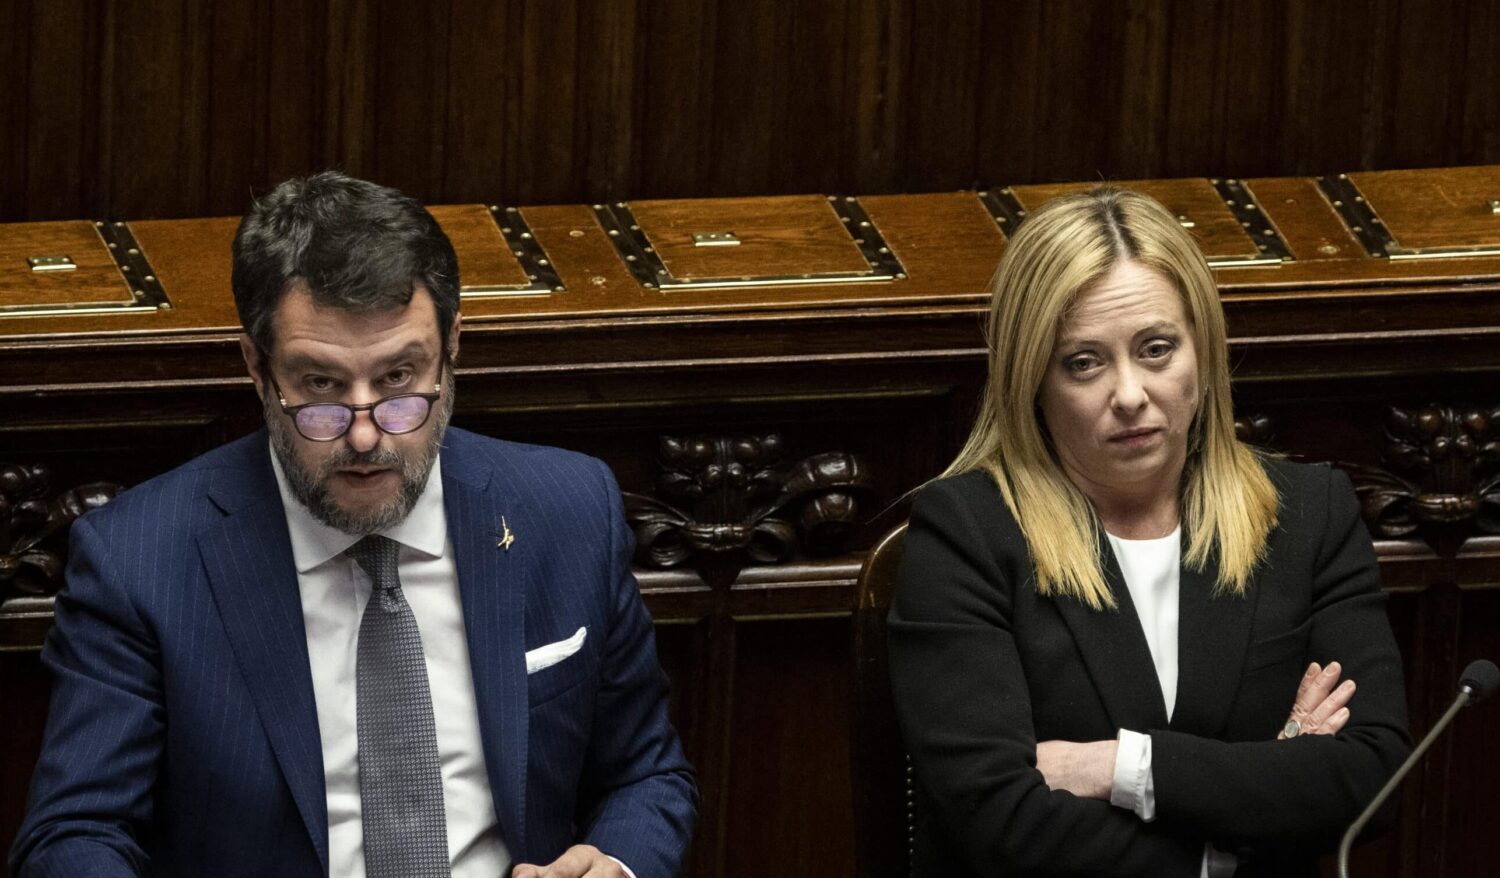 Sondaggi, la sfida tra Salvini e Meloni si sposta in Ue: i sovranisti di poco davanti ai conservatori